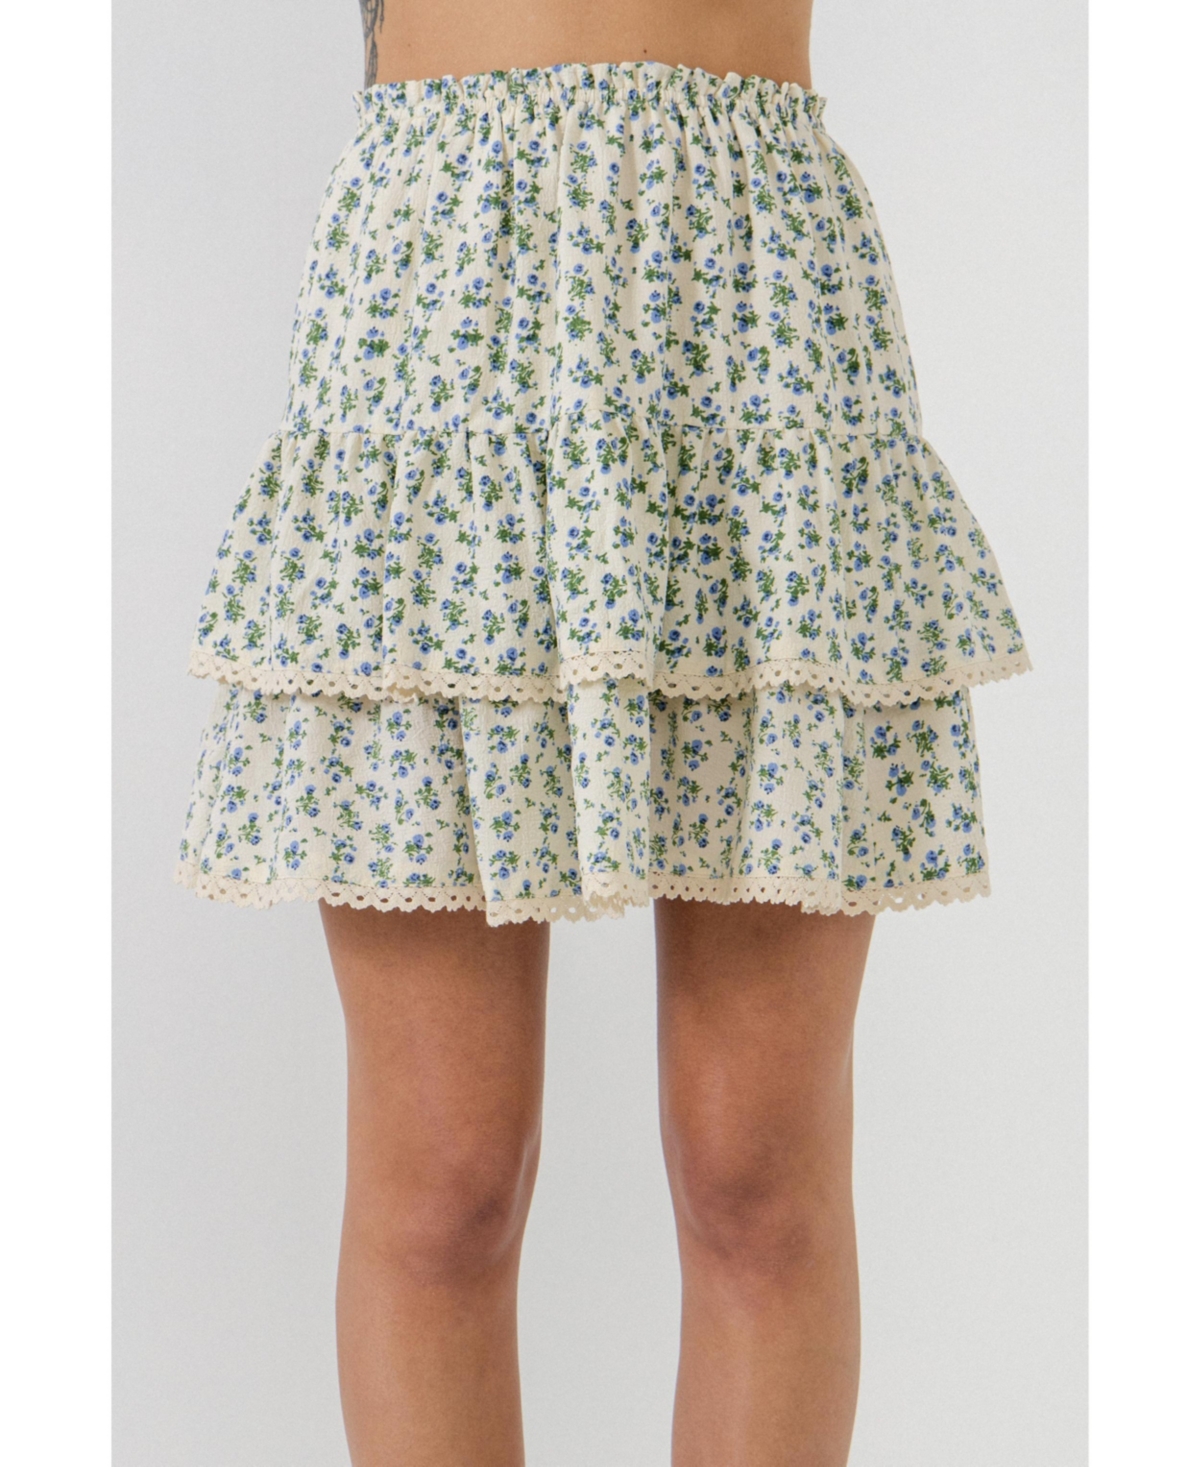 Women's Floral Lace Trim Detail MIni Skirt - Ivory/blue